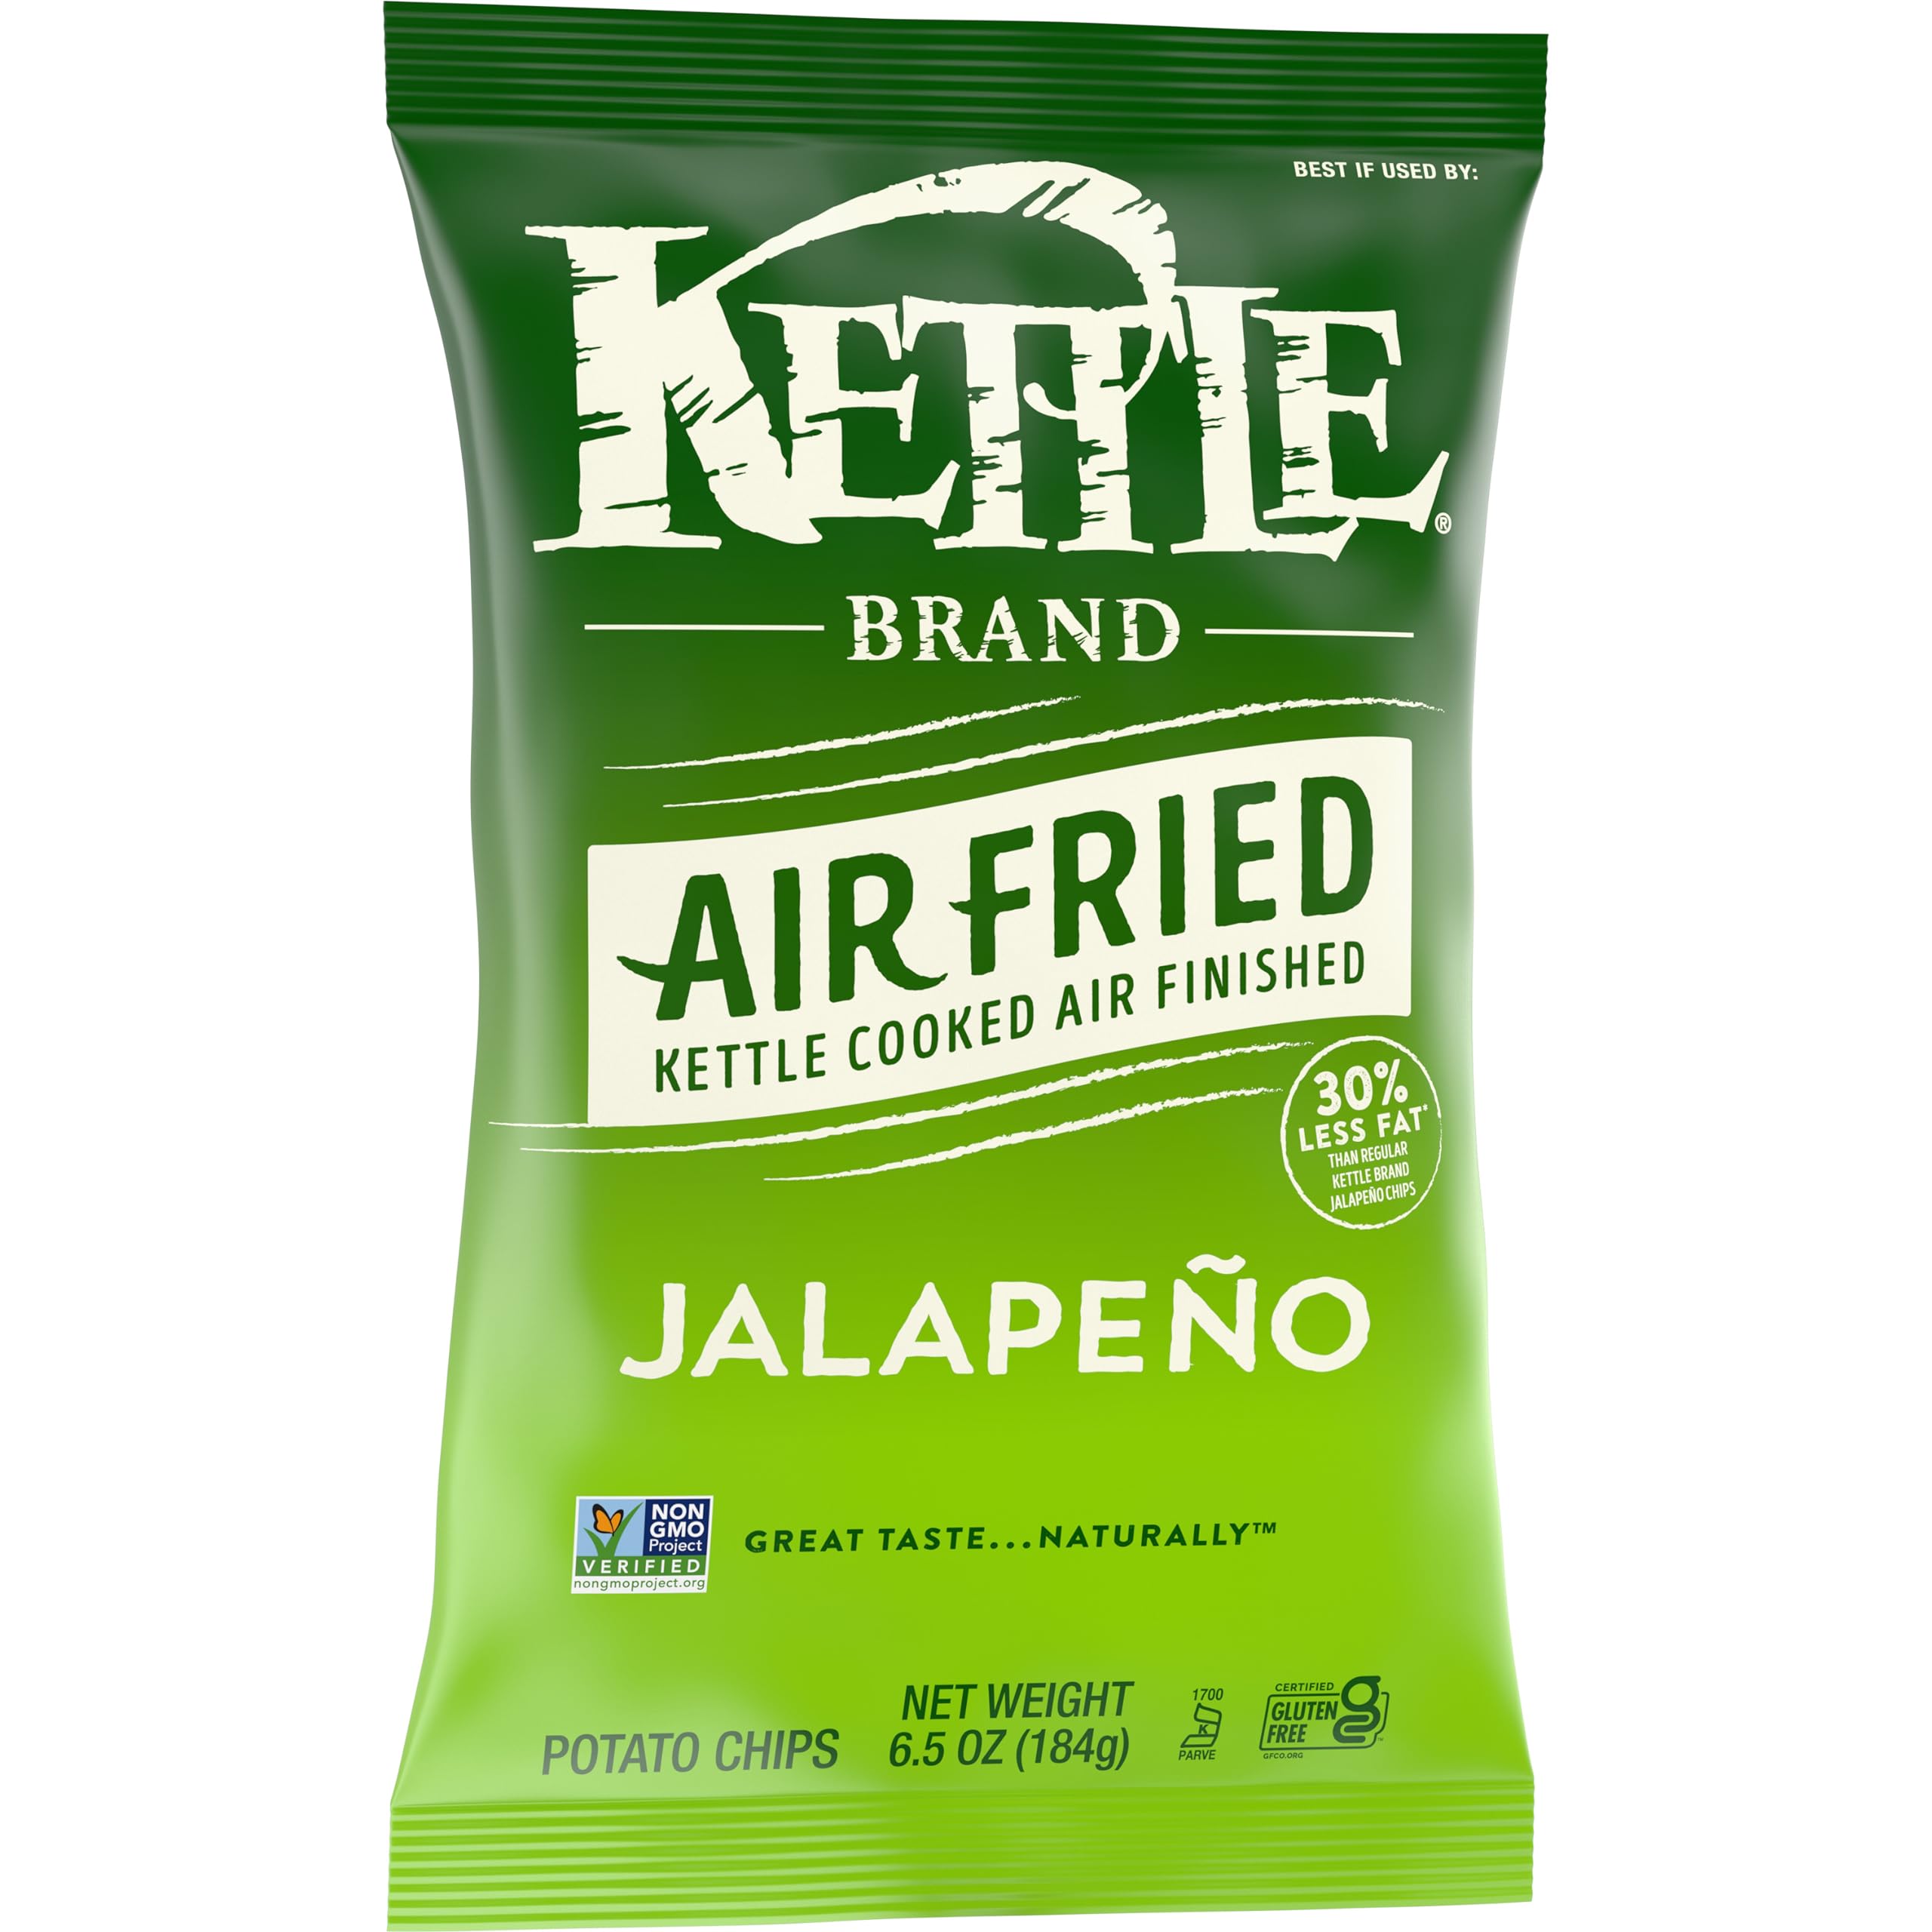 6.5oz Kettle Brand Air Fried Potato Chips (Jalapeño or Himalayan Salt) $1.67